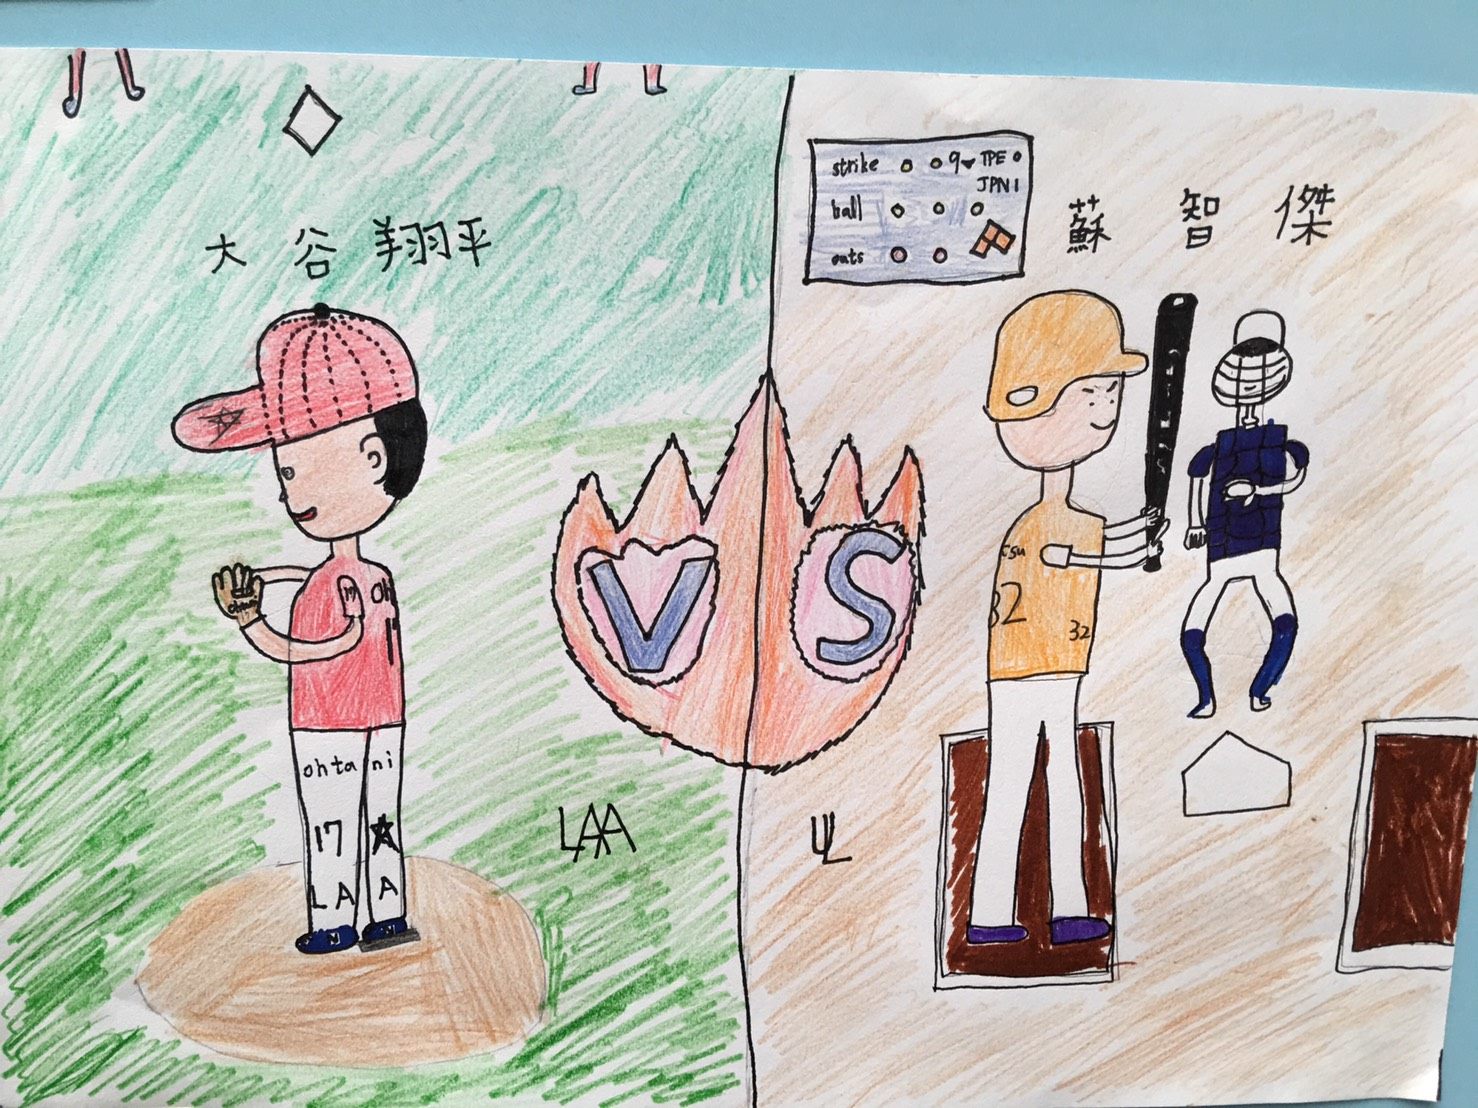 107年度台北探索馆小志工研习营的作品呈现小朋友们心目中的棒球英雄